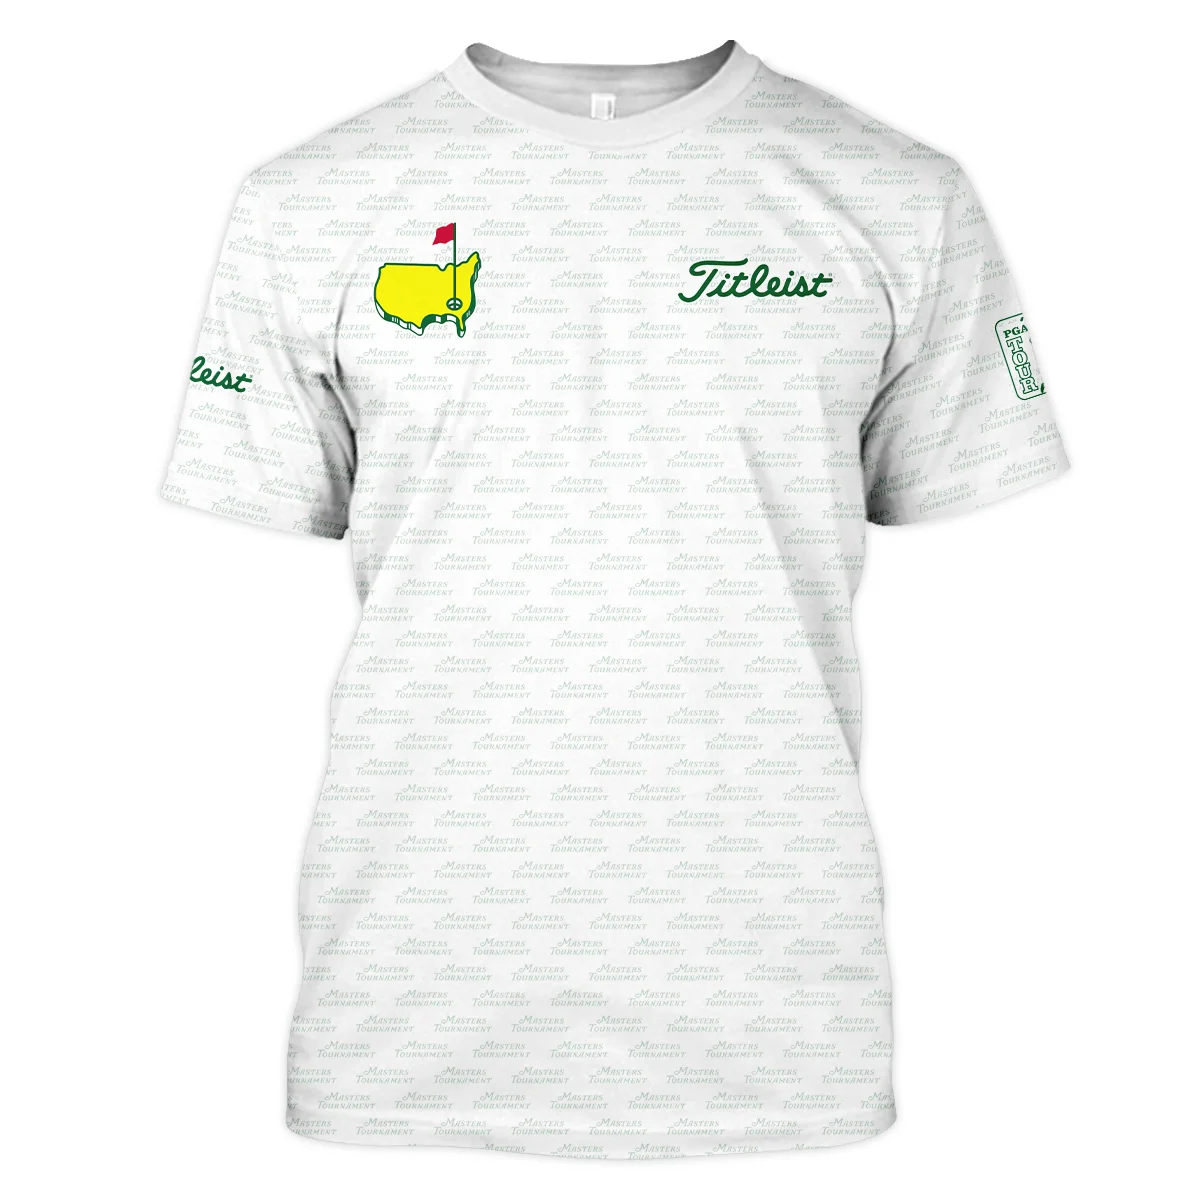 Masters Tournament Golf Titleist Zipper Hoodie Shirt Logo Text Pattern White Green Golf Sports All Over Print Zipper Hoodie Shirt